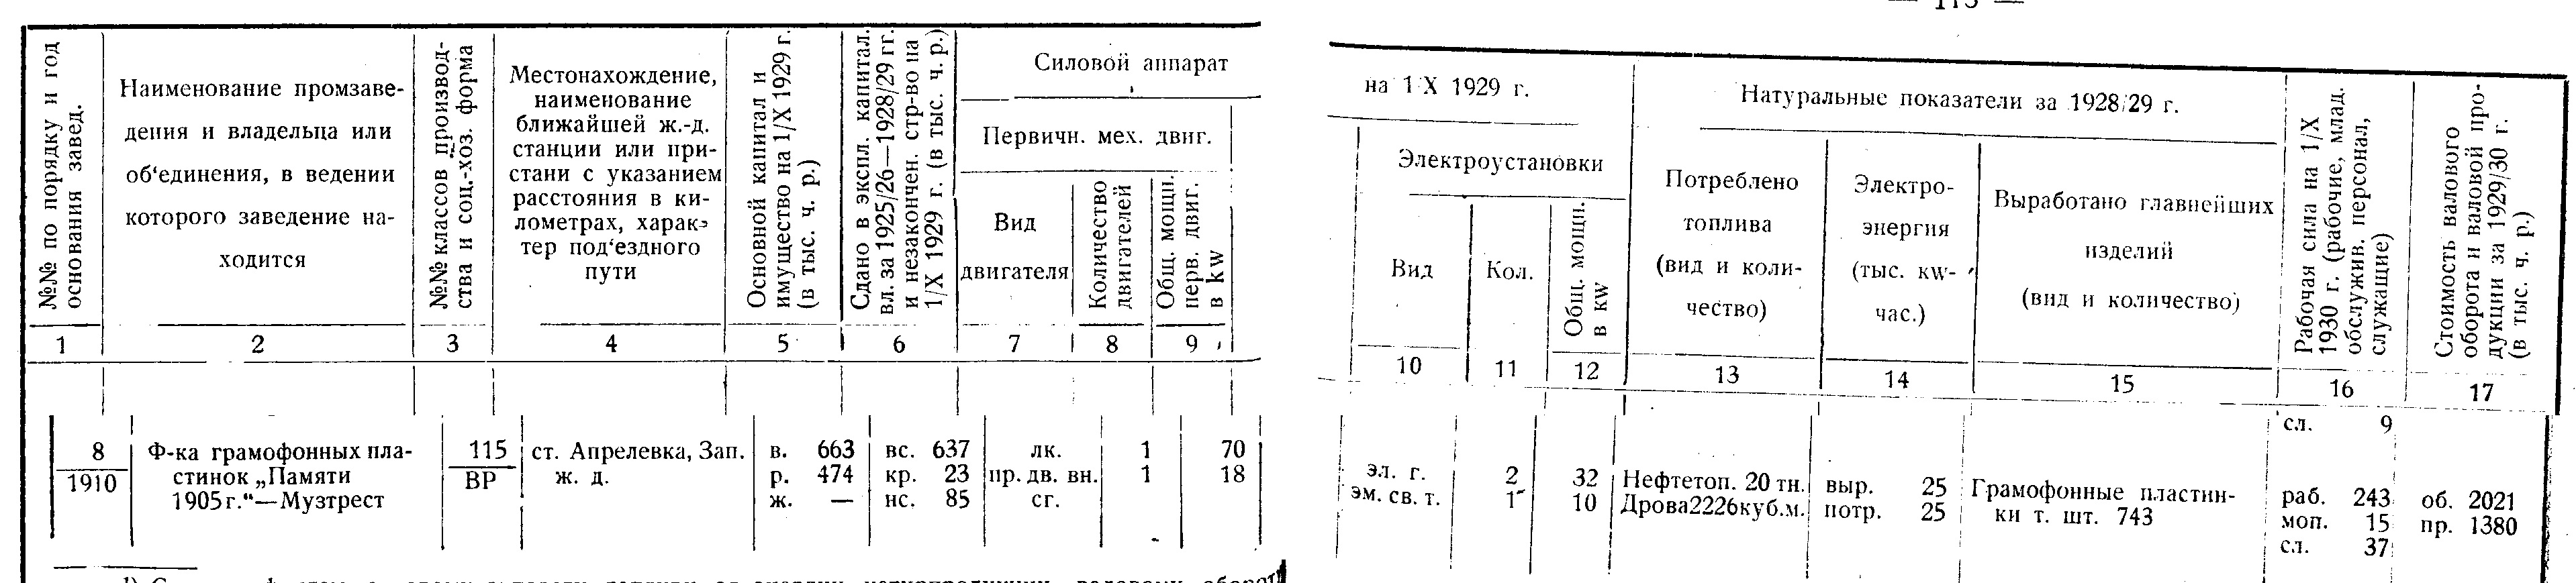 Фабрика "Памяти 1905 года", статистические данные